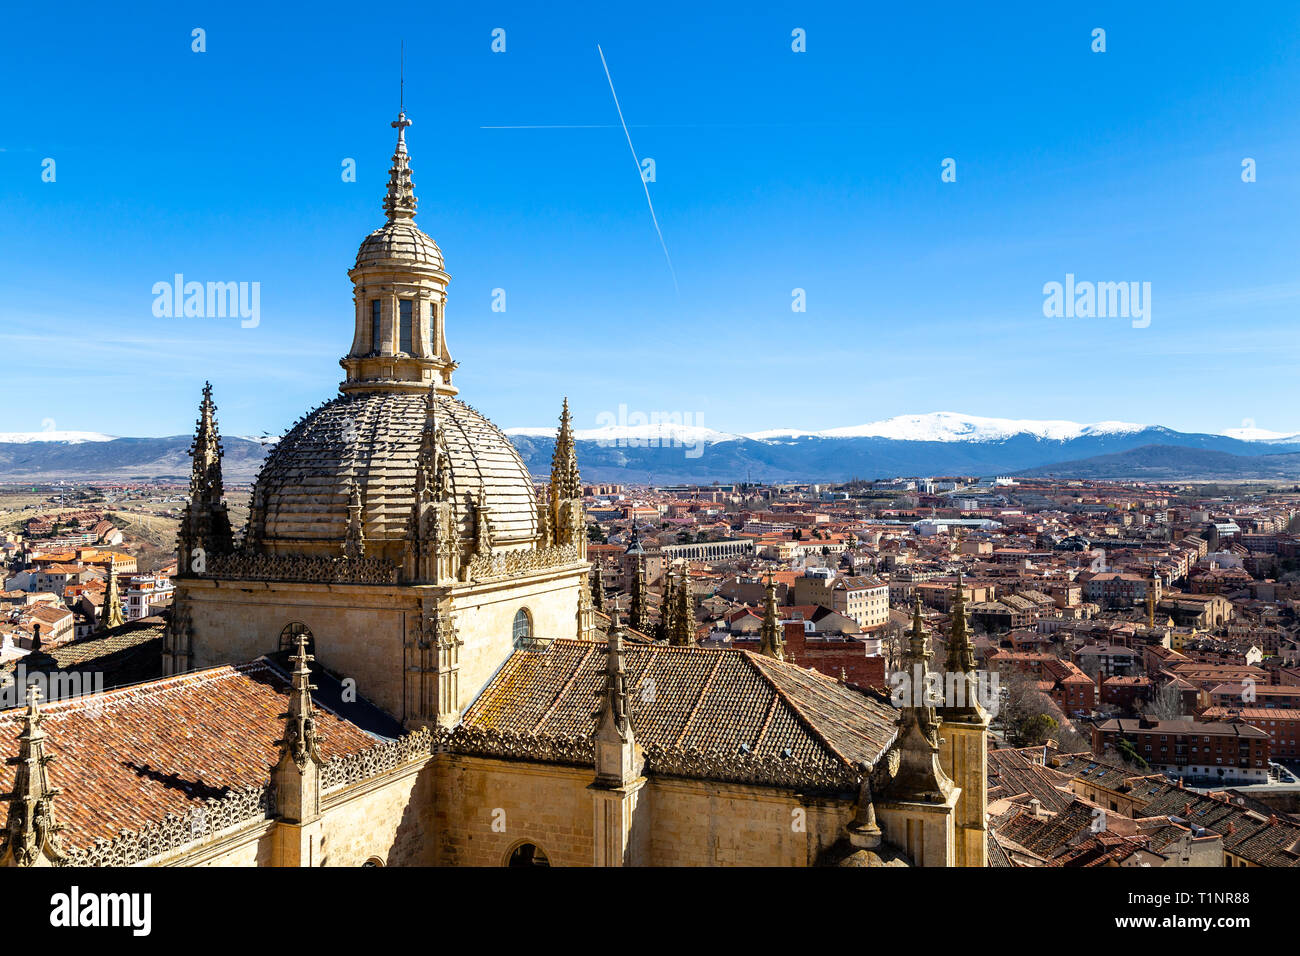 Segovia, Spagna: vista sulla cupola del Duomo e di Segovia La città vecchia dalla cima del campanile durante il periodo invernale. Le cime innevate della Foto Stock